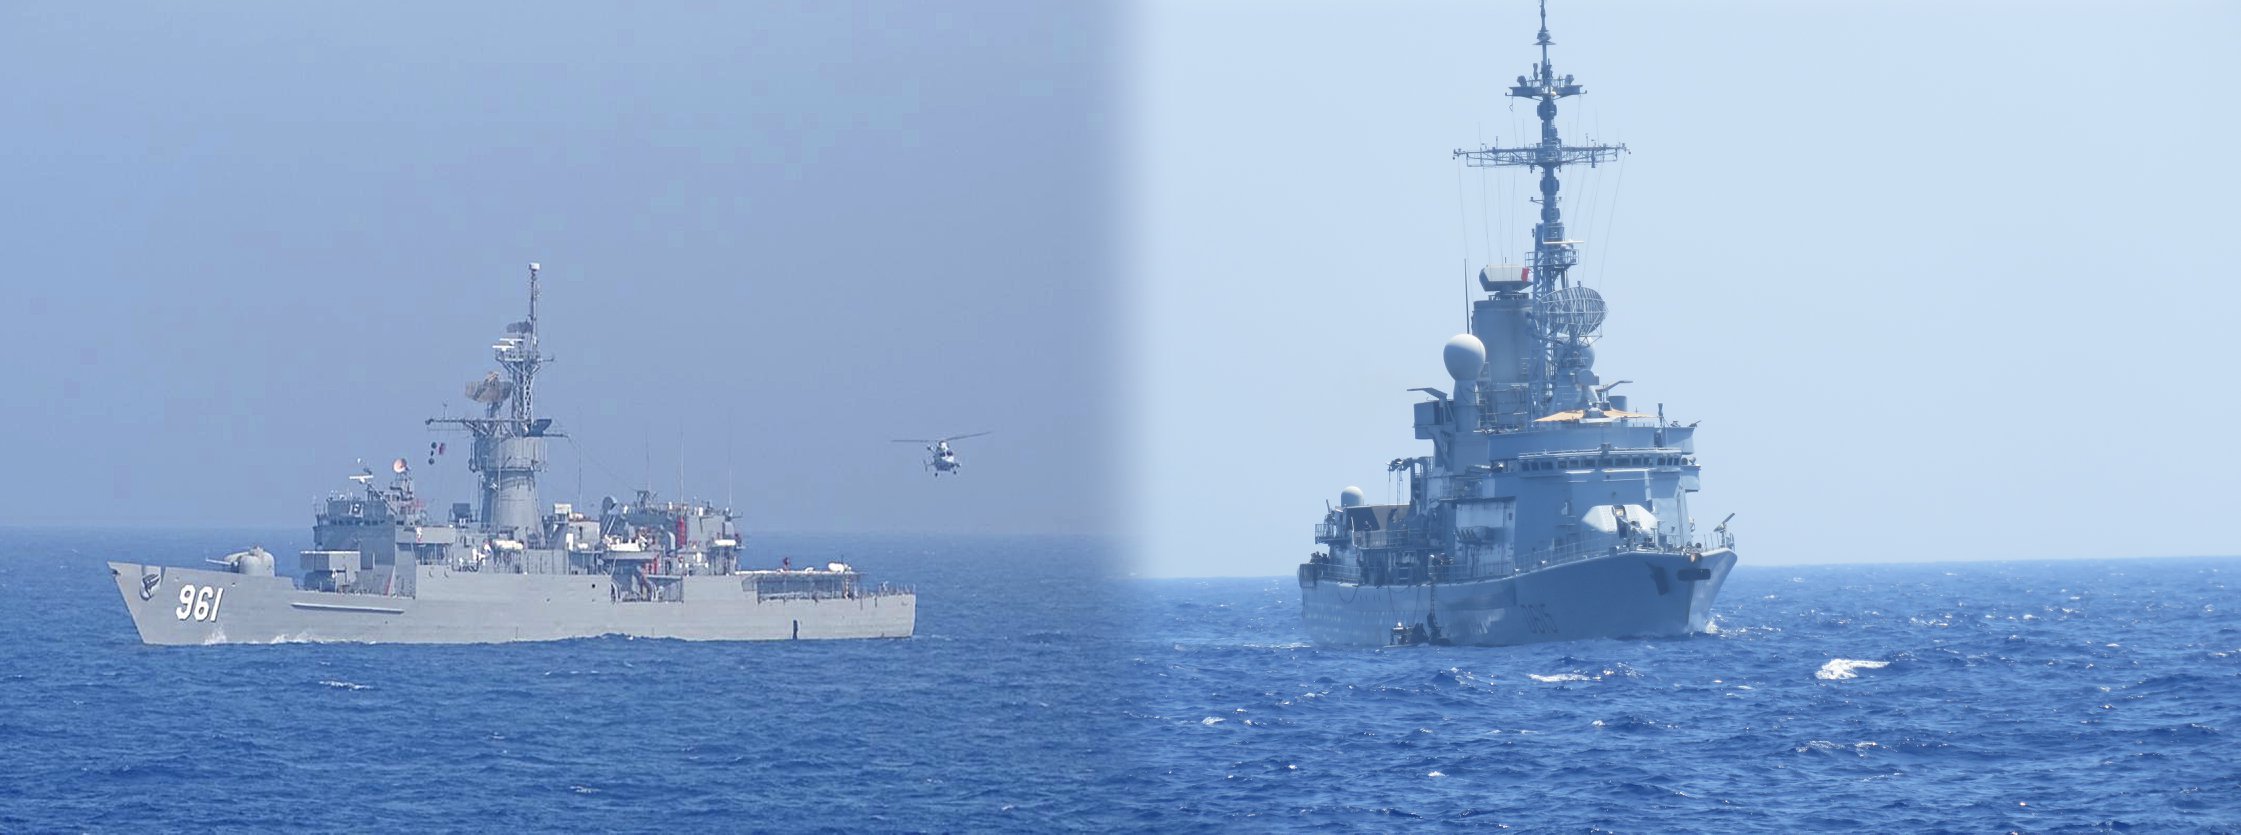   القوات البحرية المصرية والفرنسية تنفذان تدريب بحرى عابر بالبحر المتوسط